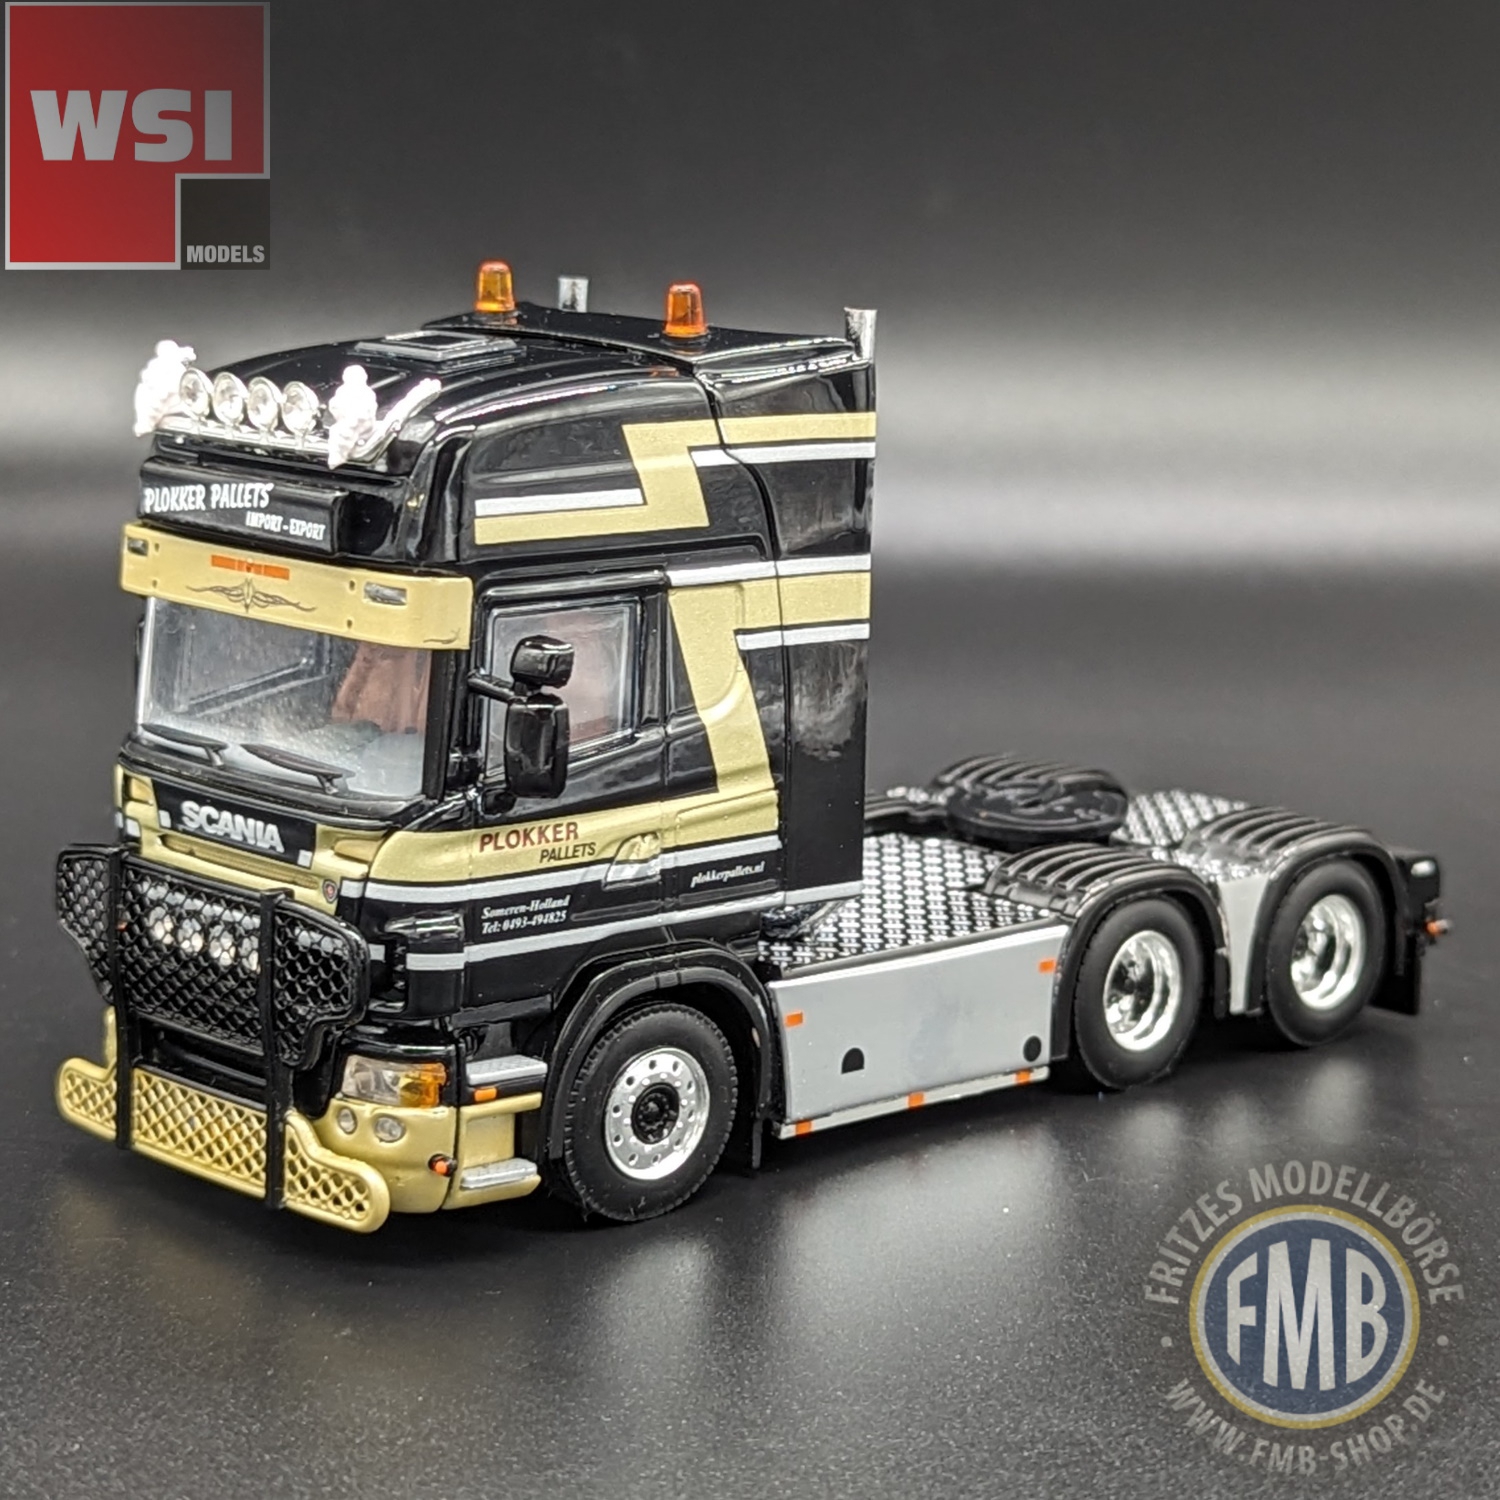 WSI   Scania R5 TL 6x2 truck tractor 3axle   Plokker